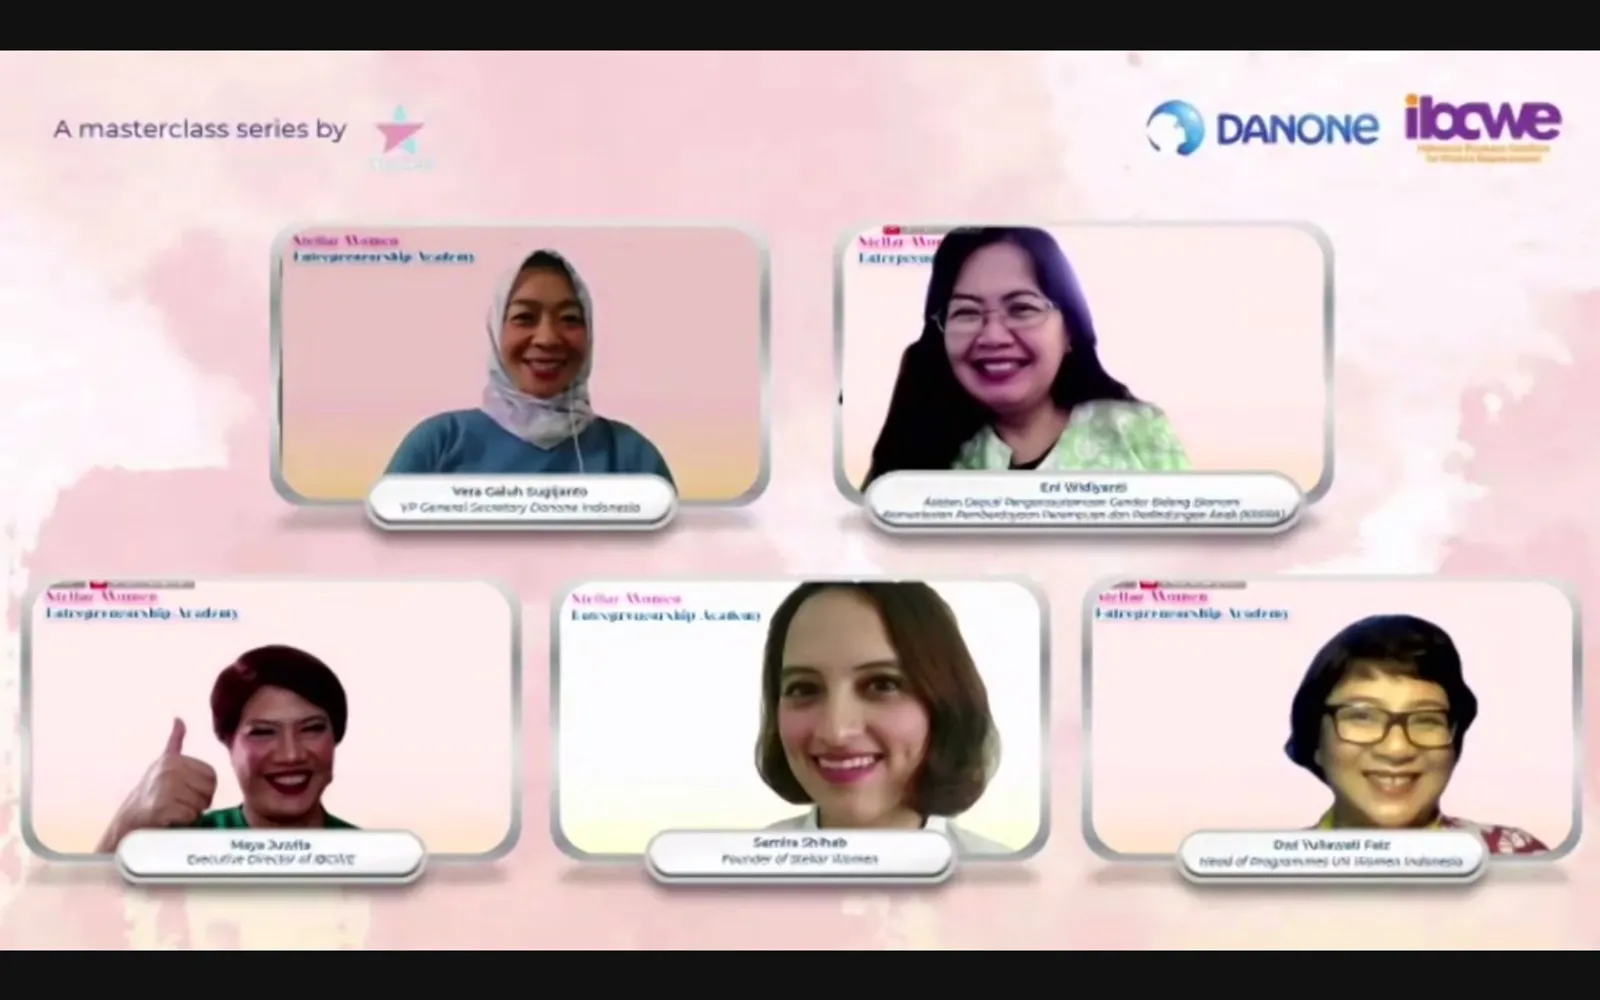 Danone Dukung Perempuan Indonesia Lewat Pelatihan Wirausaha